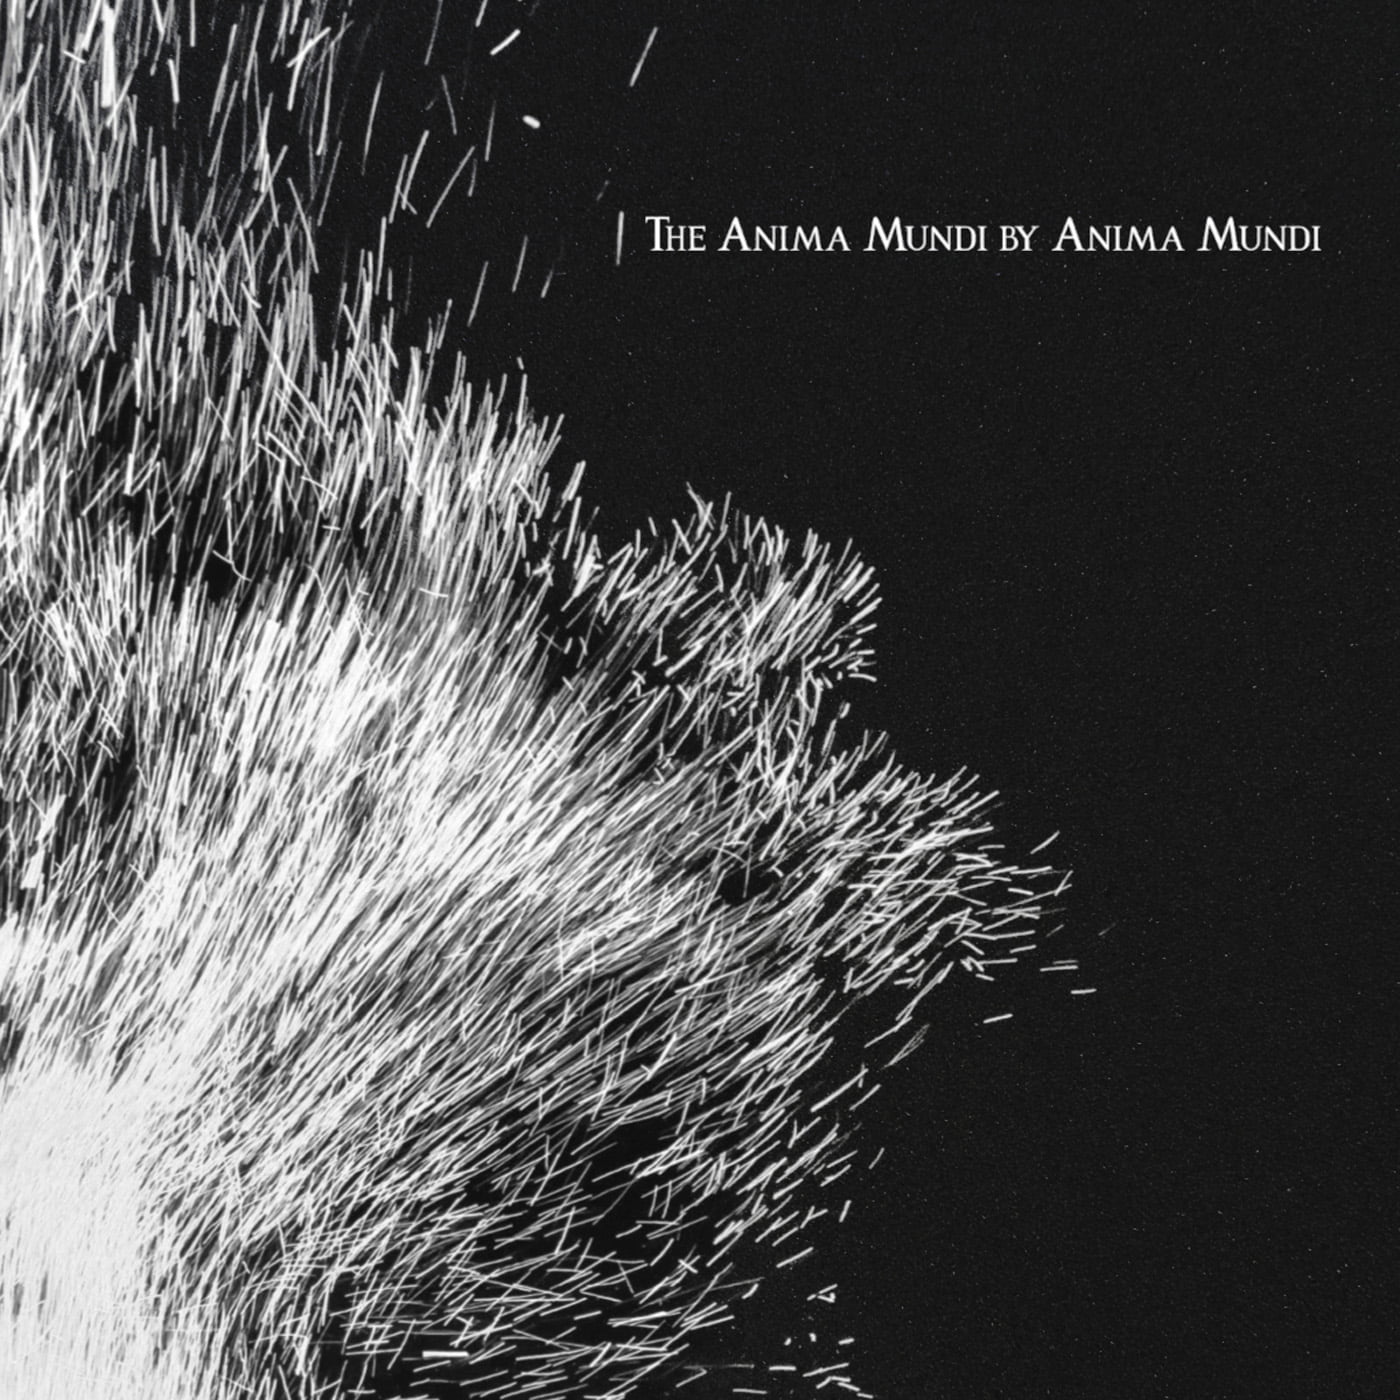 The Anima Mundi